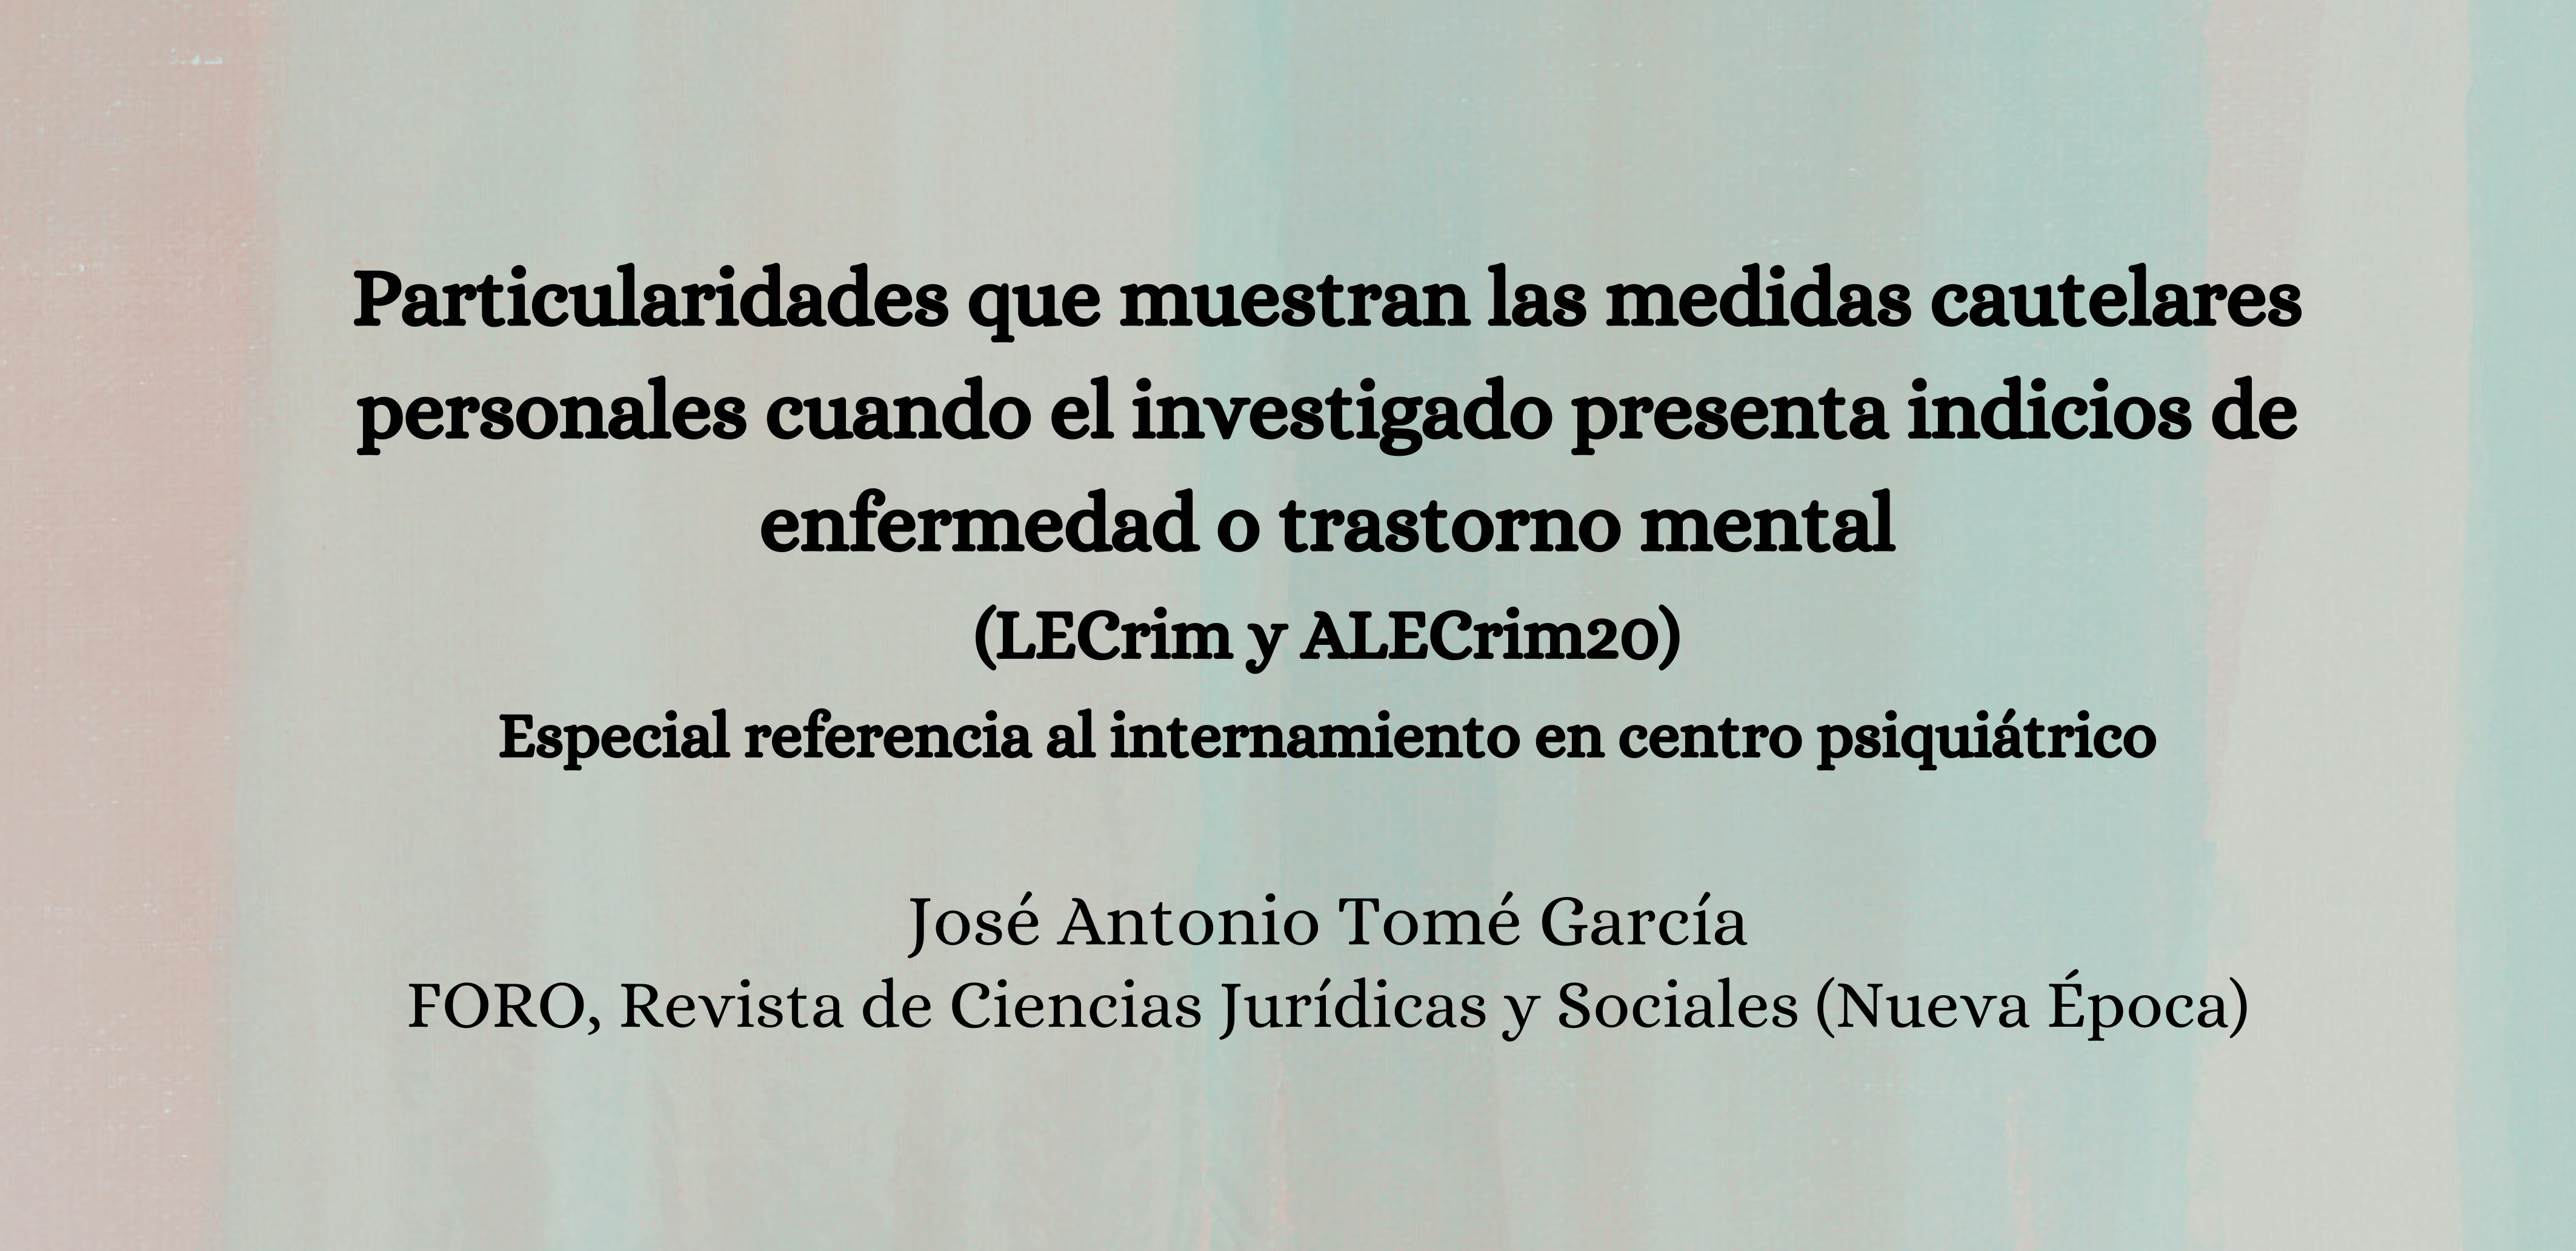 Nueva publicación vinculada al proyecto: José Antonio Tomé García en FORO